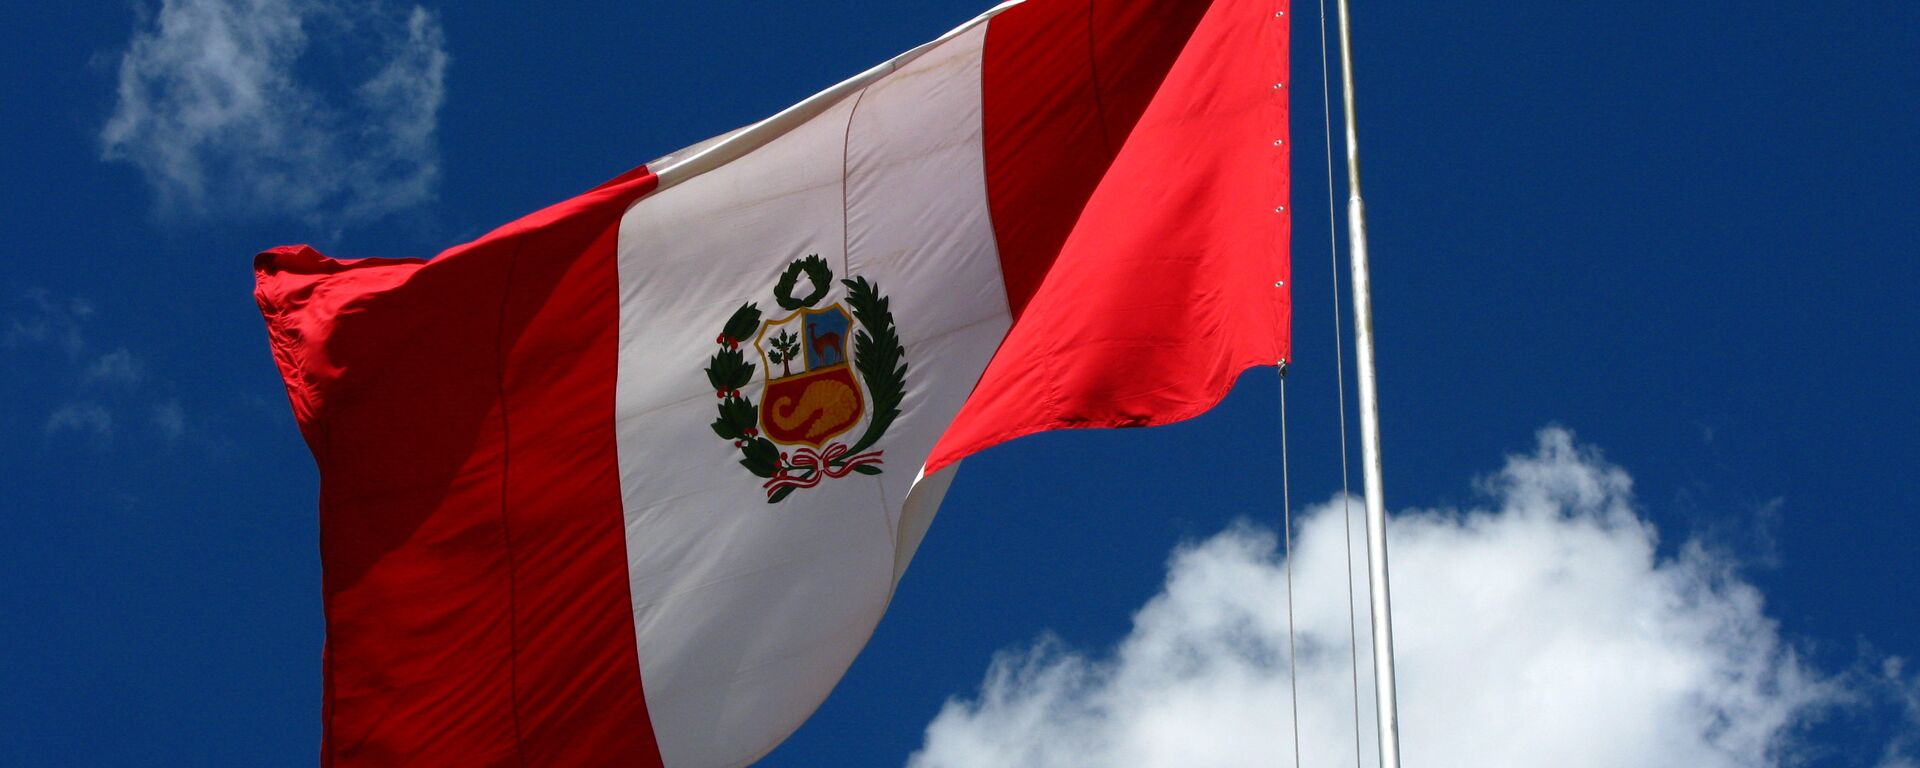 Bandera del Perú - Sputnik Mundo, 1920, 23.03.2021